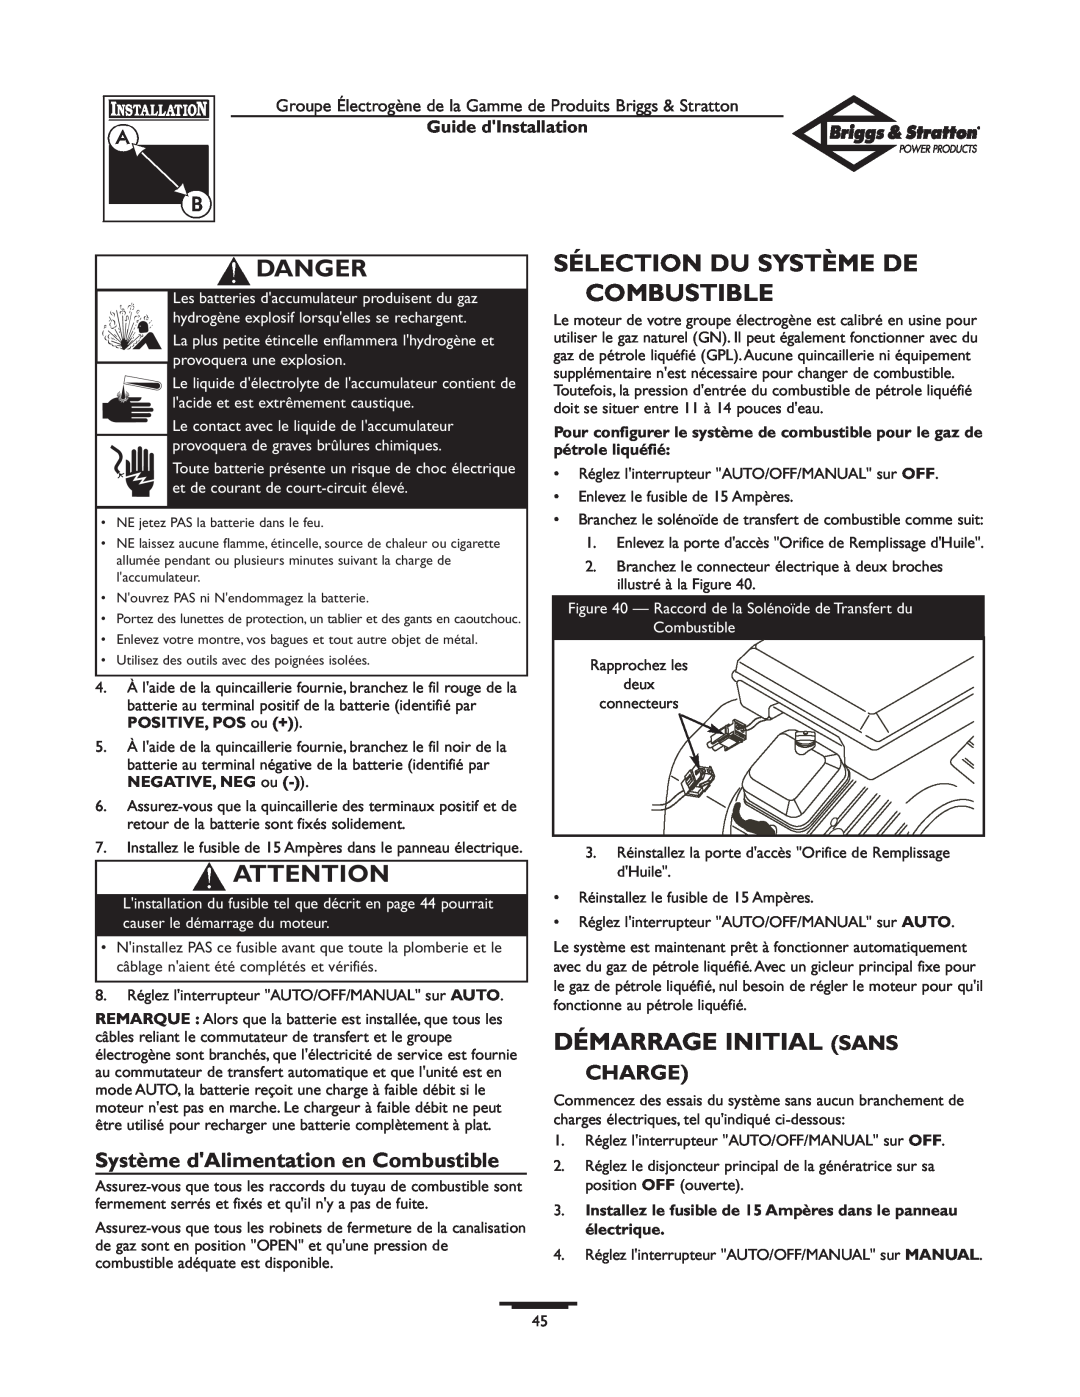 Briggs & Stratton 01938-0 Sélection Du Système De Combustible, Démarrage Initial Sans, Charge, Danger, Guide dInstallation 